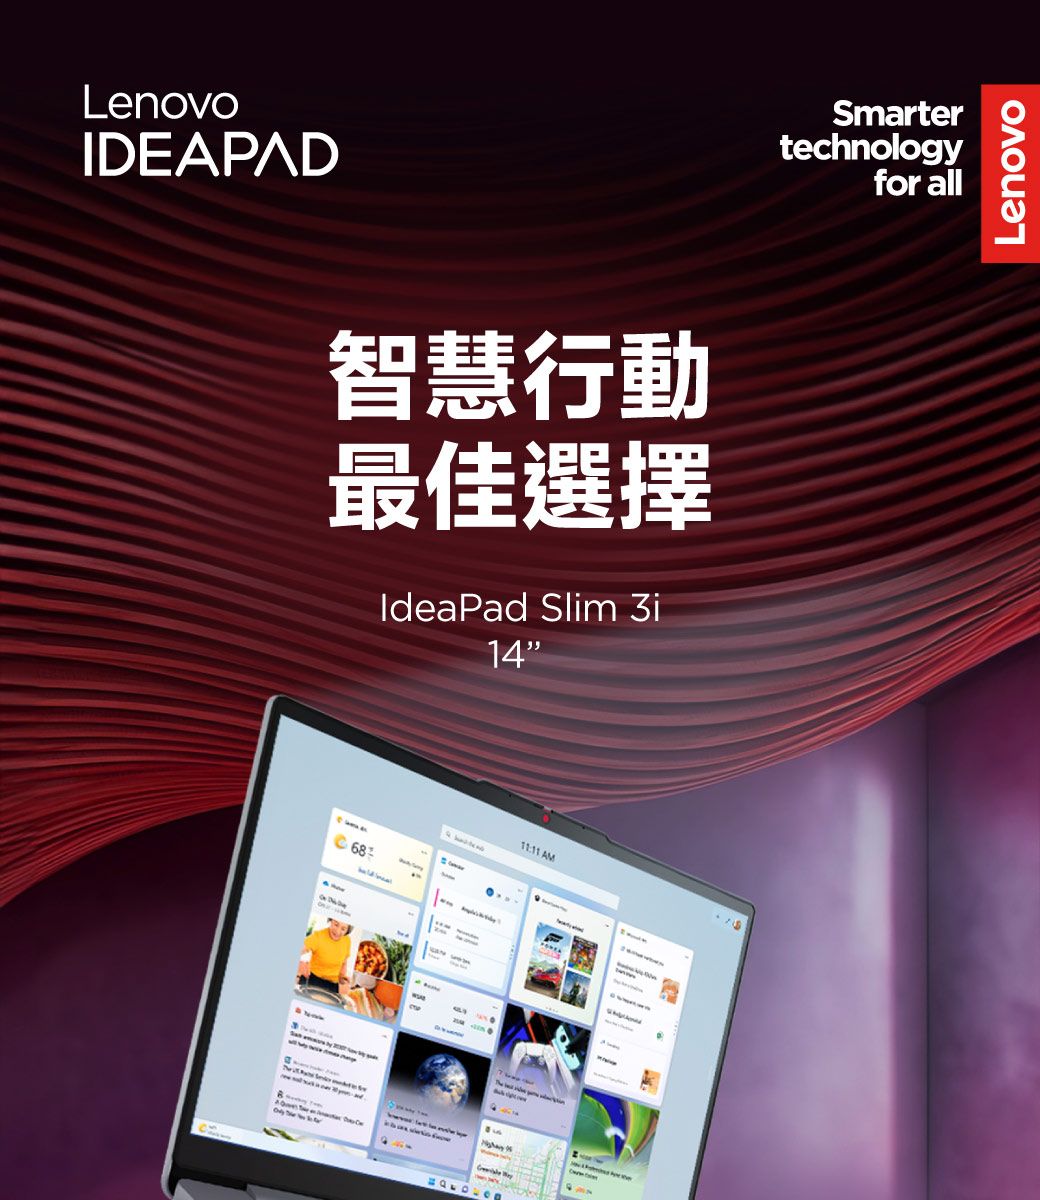 LenovoDEAPAD智慧行動最佳選擇IdeaPad Slim 3i14    I AMSmartertechnologyfor allLenovo